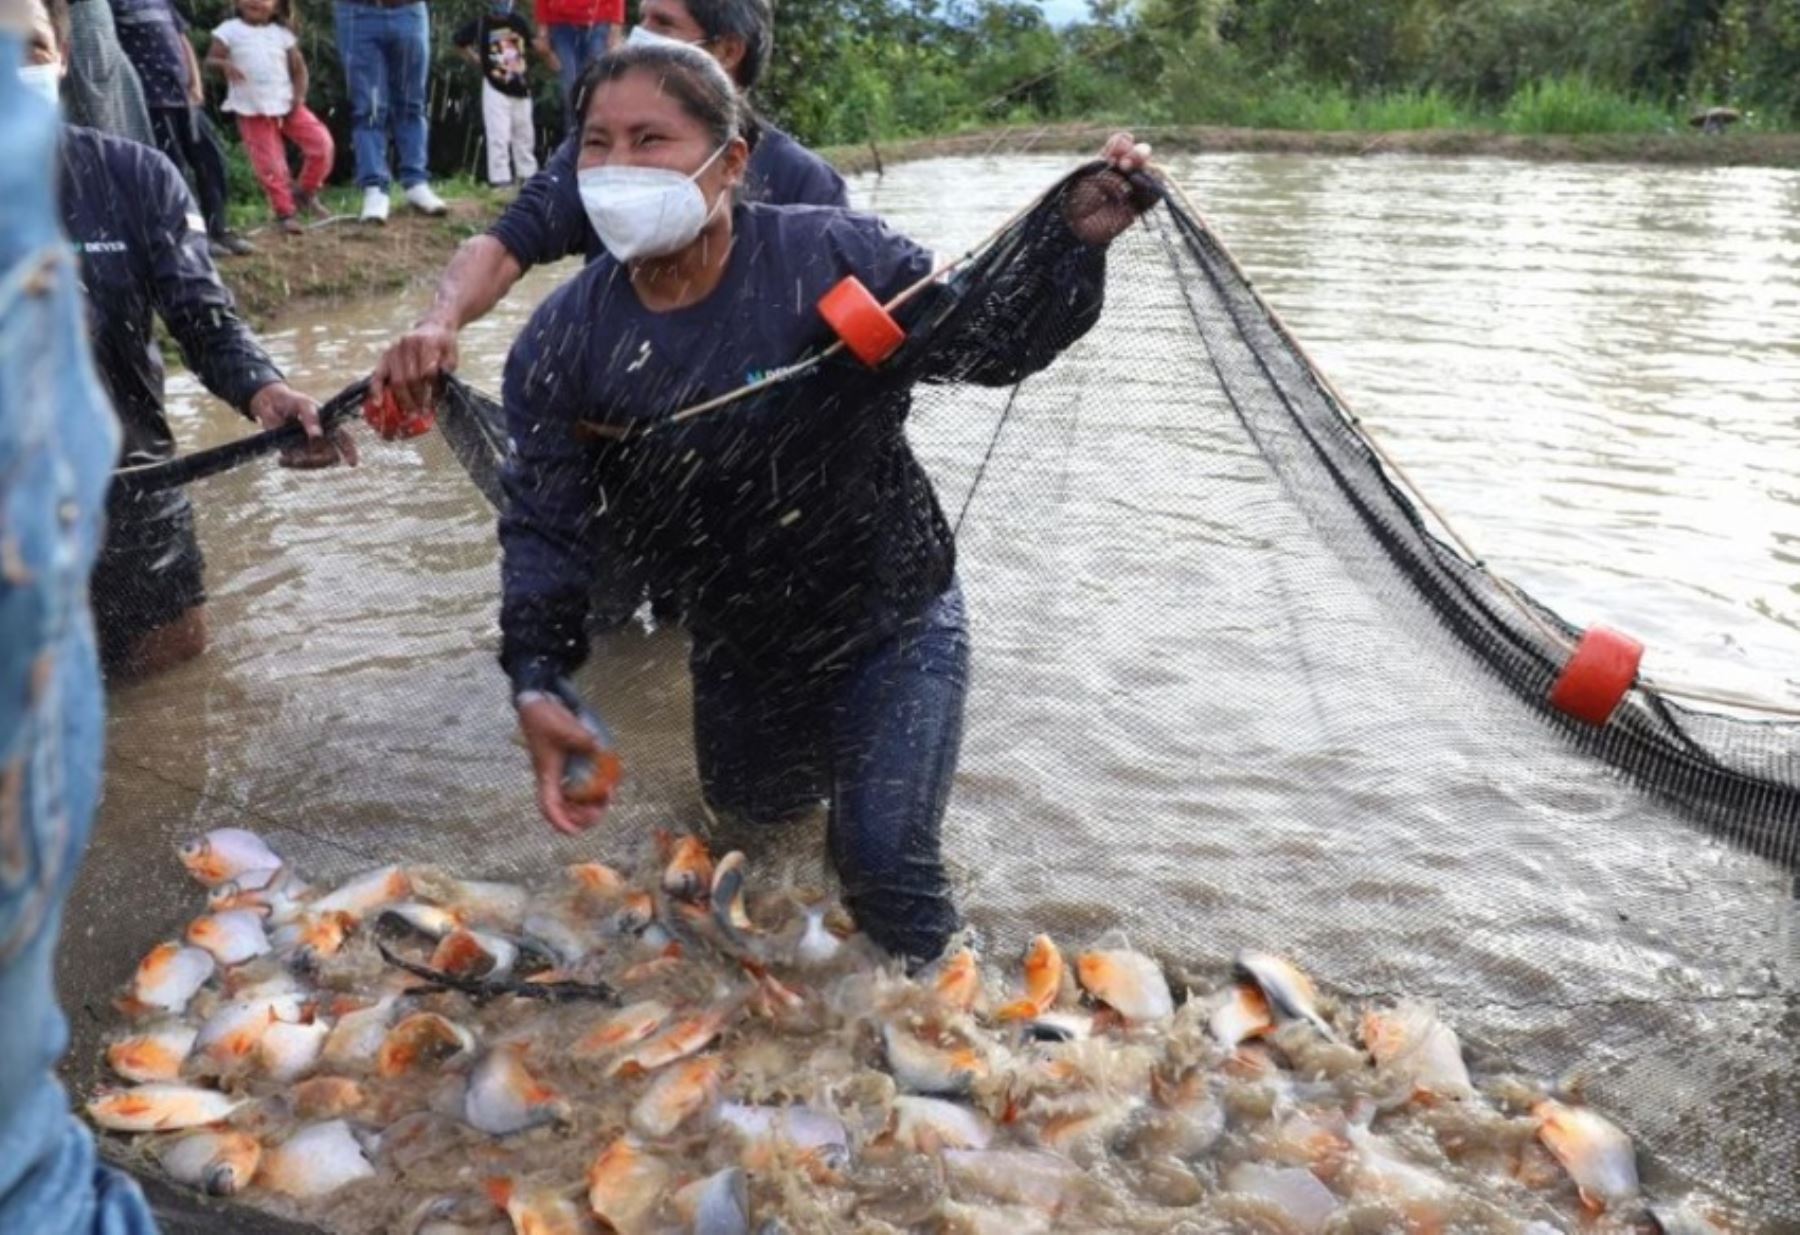 Huánuco: distritos de provincia de Leoncio Prado apuestan al desarrollo con crianza de peces amazónicos